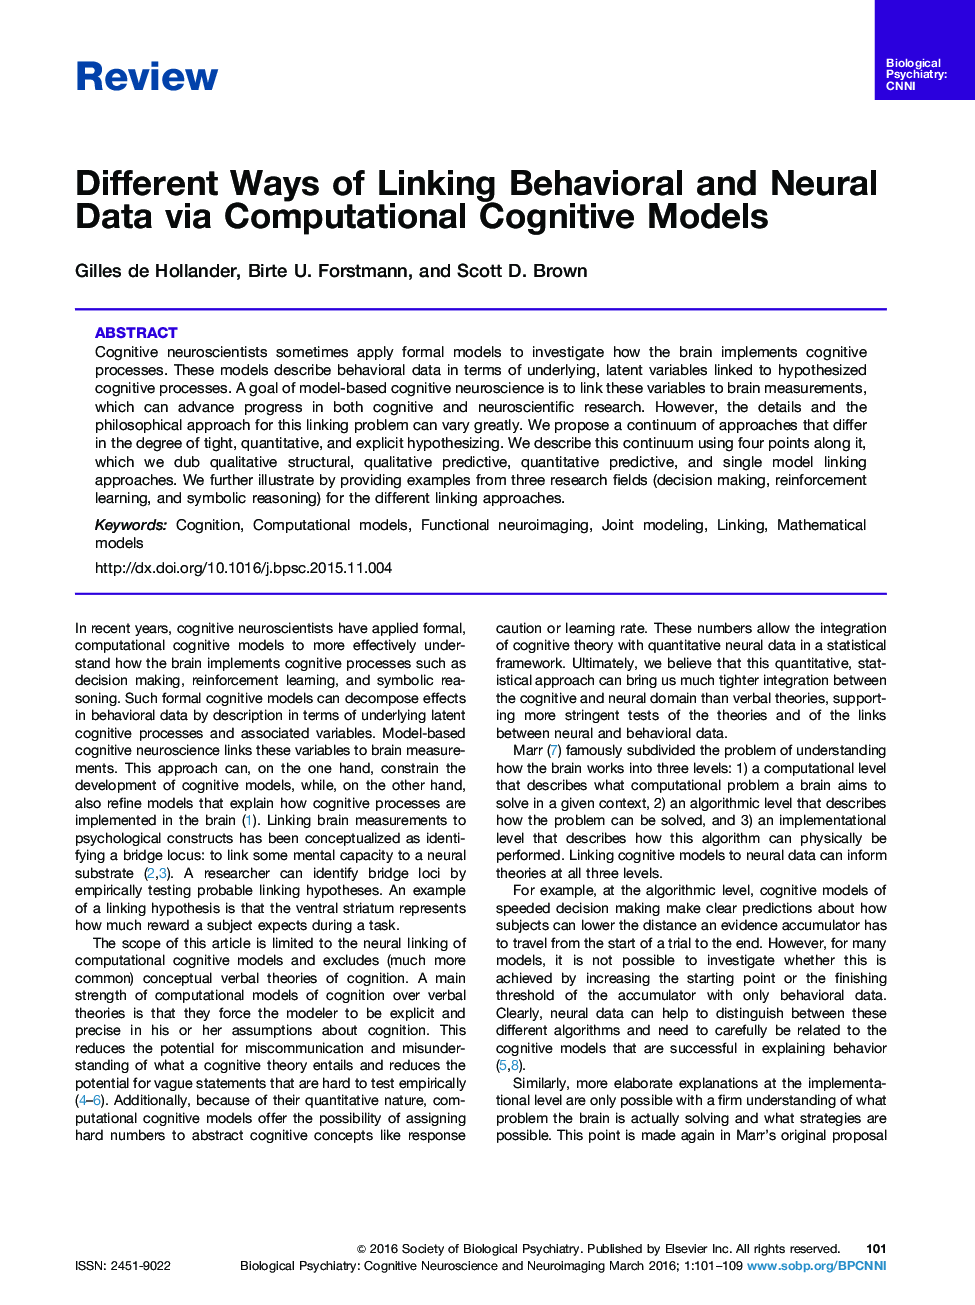 روش های مختلف پیوند داده های رفتاری و عصبی با استفاده از مدل های شناختی محاسباتی 